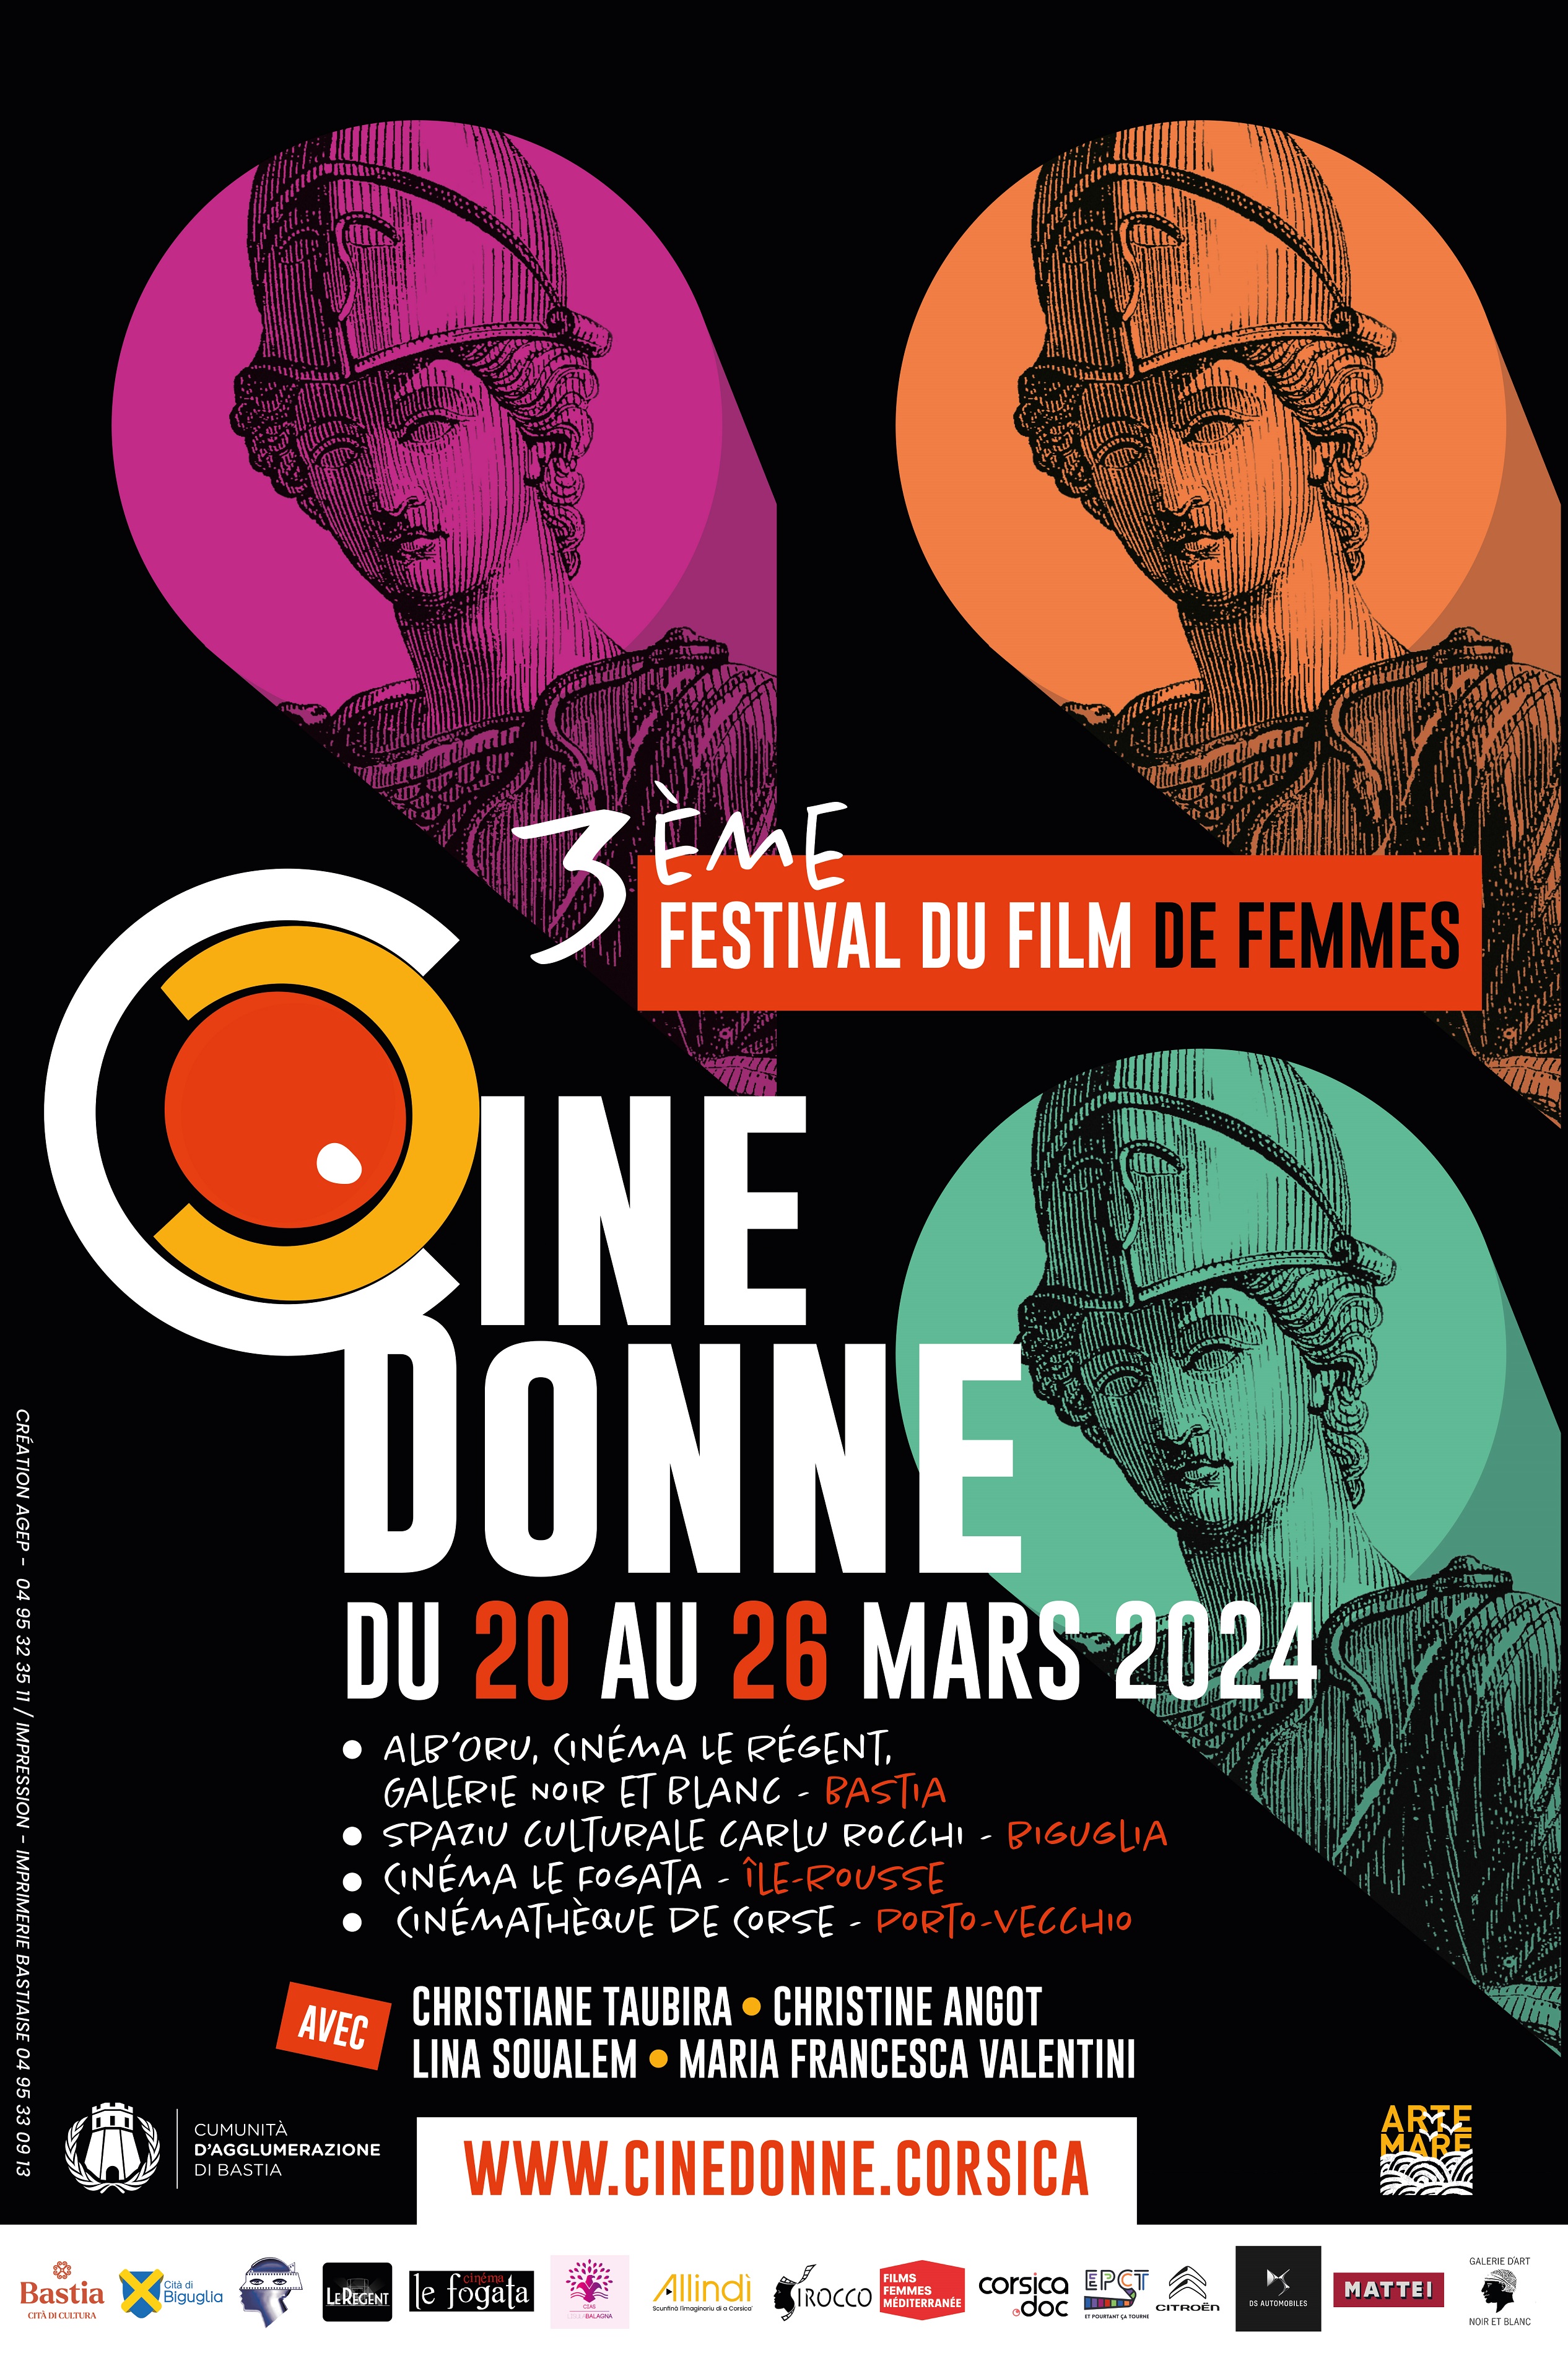 Christiane Taubira, marraine de la 3e édition de "Cine Donne" du 20 au 26 mars